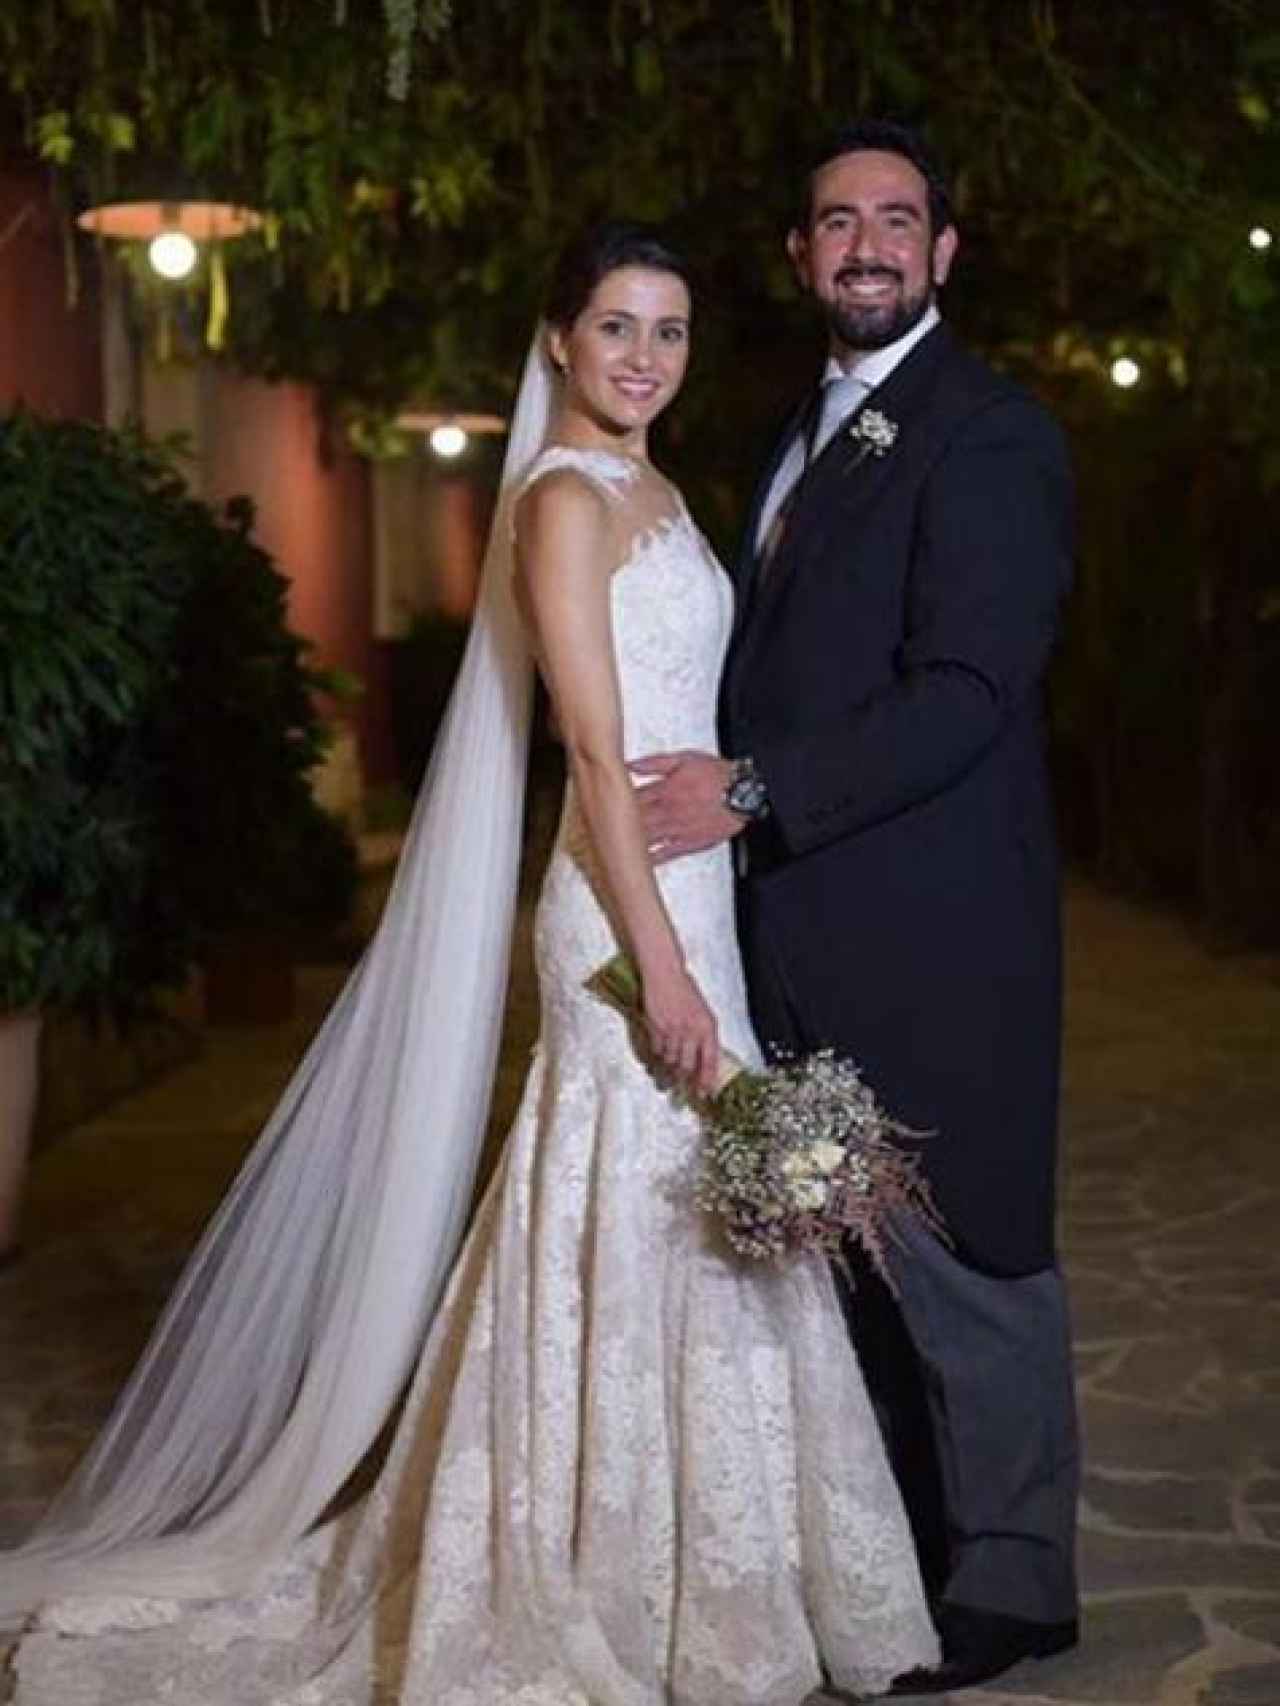 Foto de la boda de Inés Arrimadas con Xavier Cima.